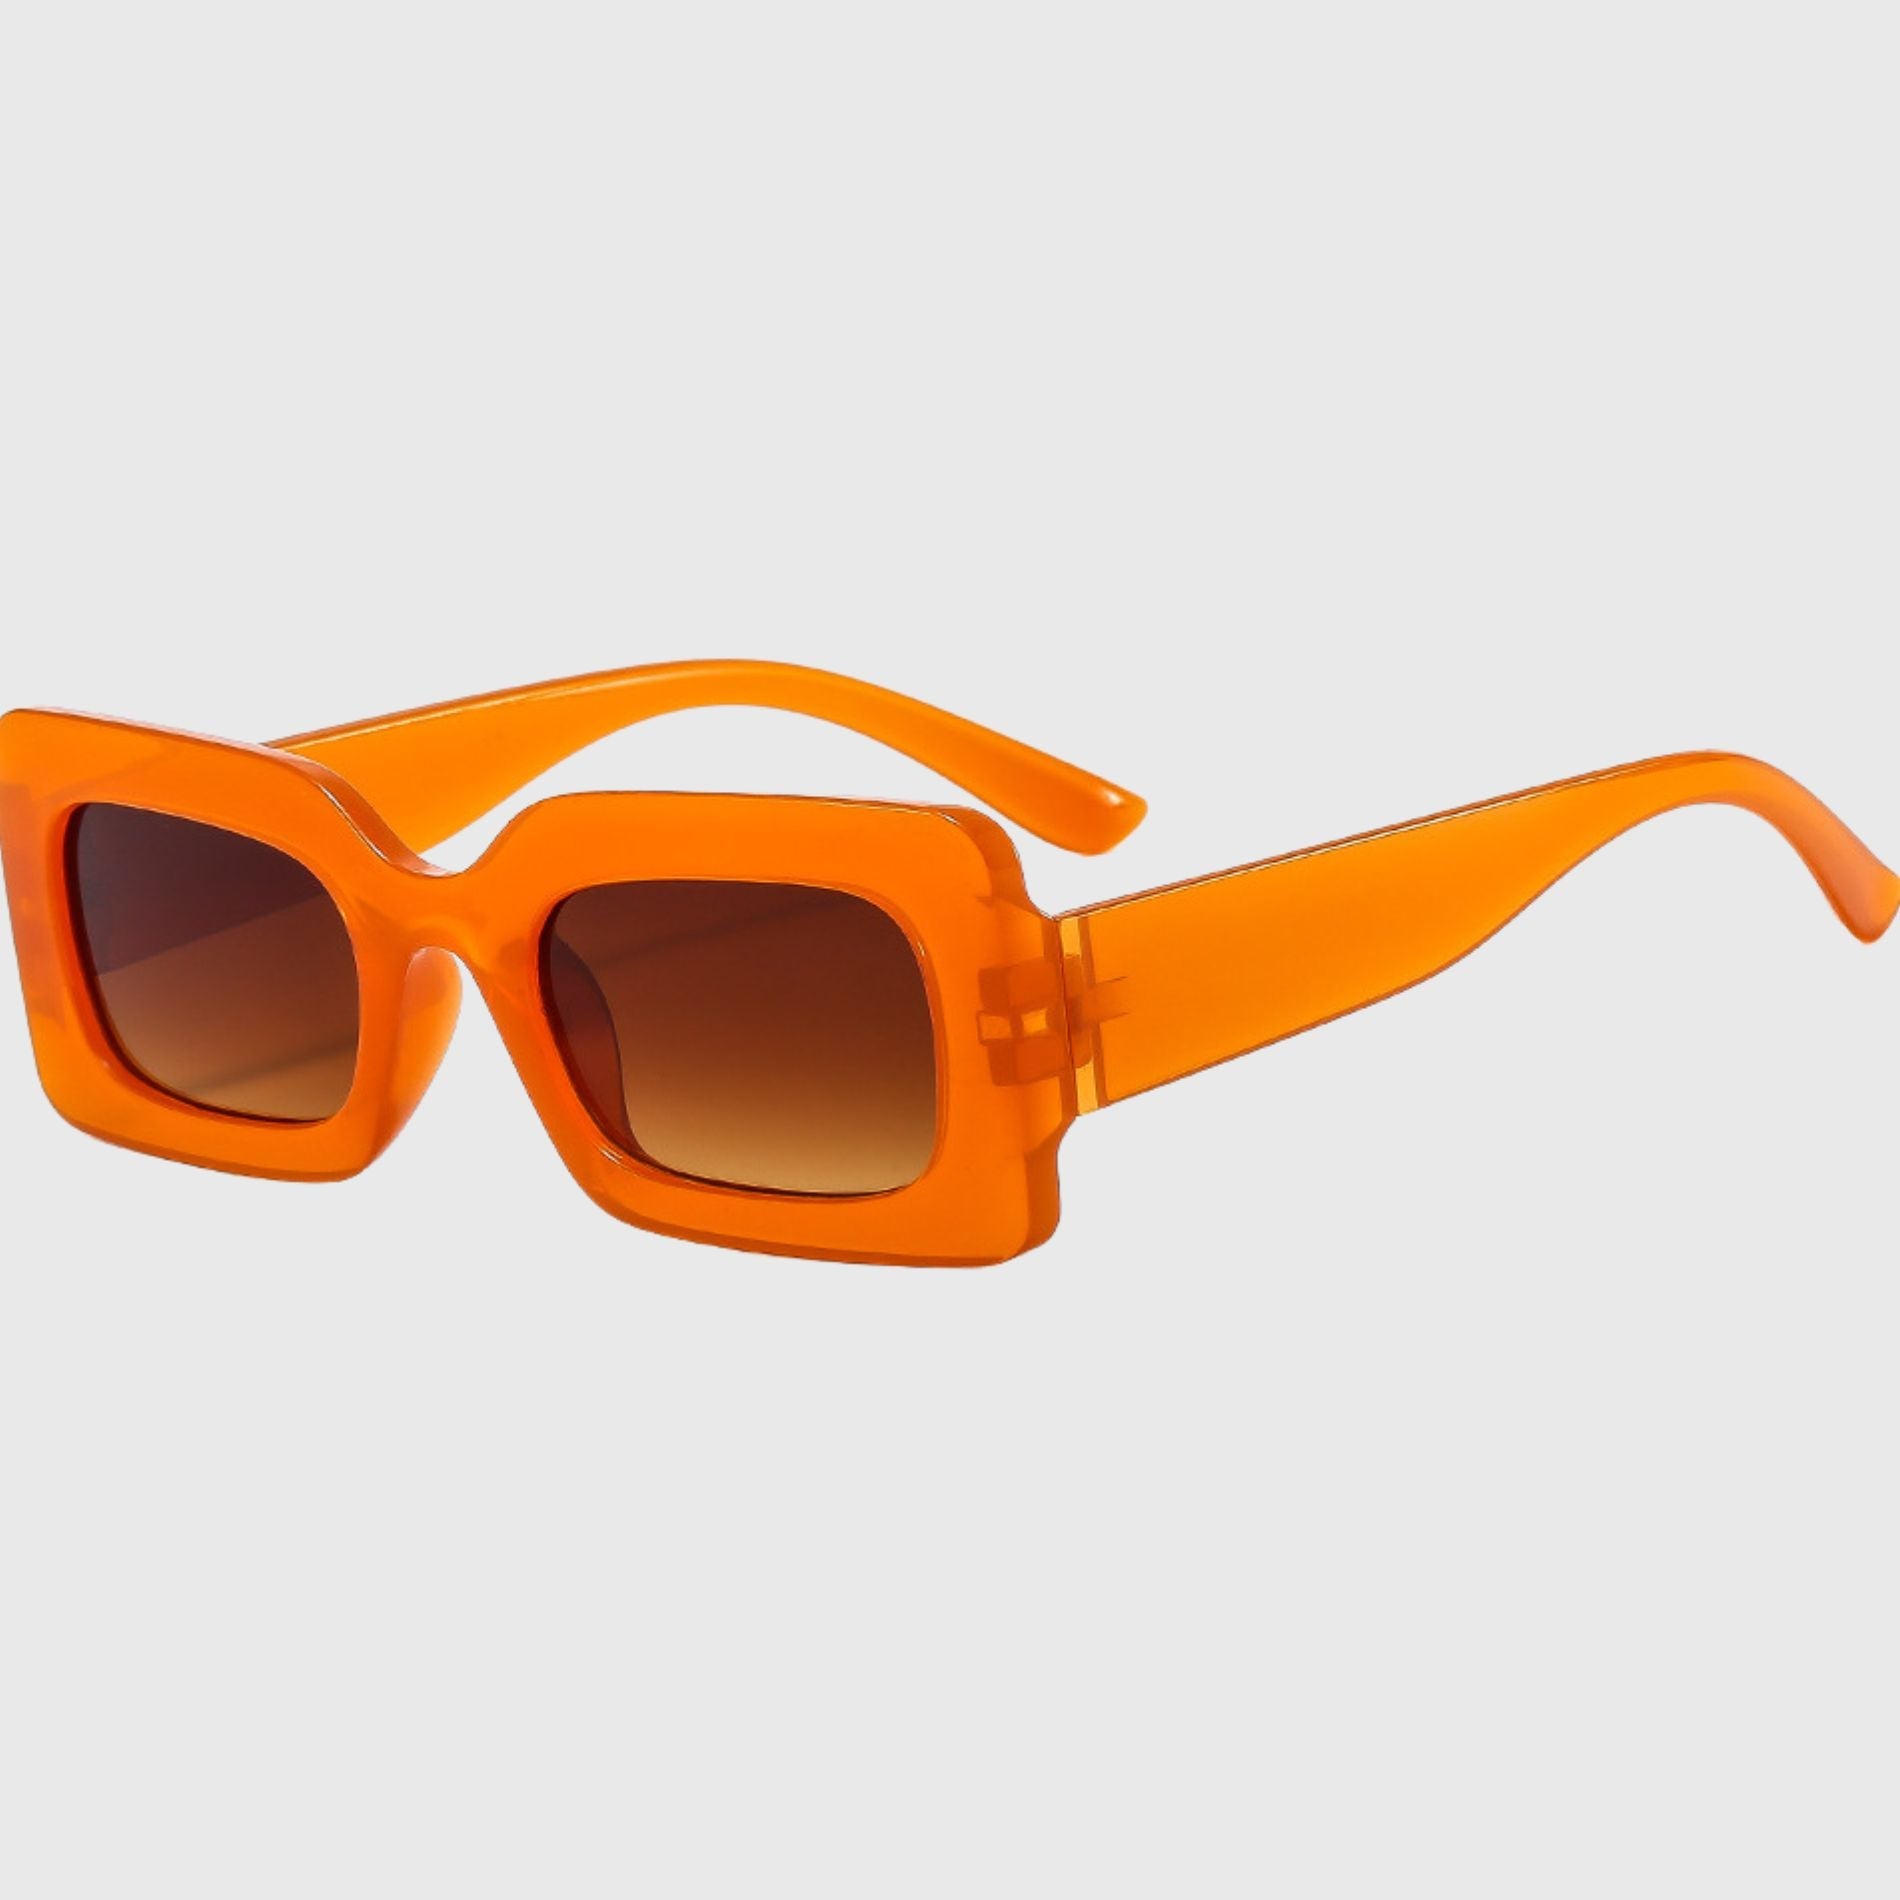 Cha Cha Retangular Sunglasses UV400 ProtectionIDansk Copenhagen